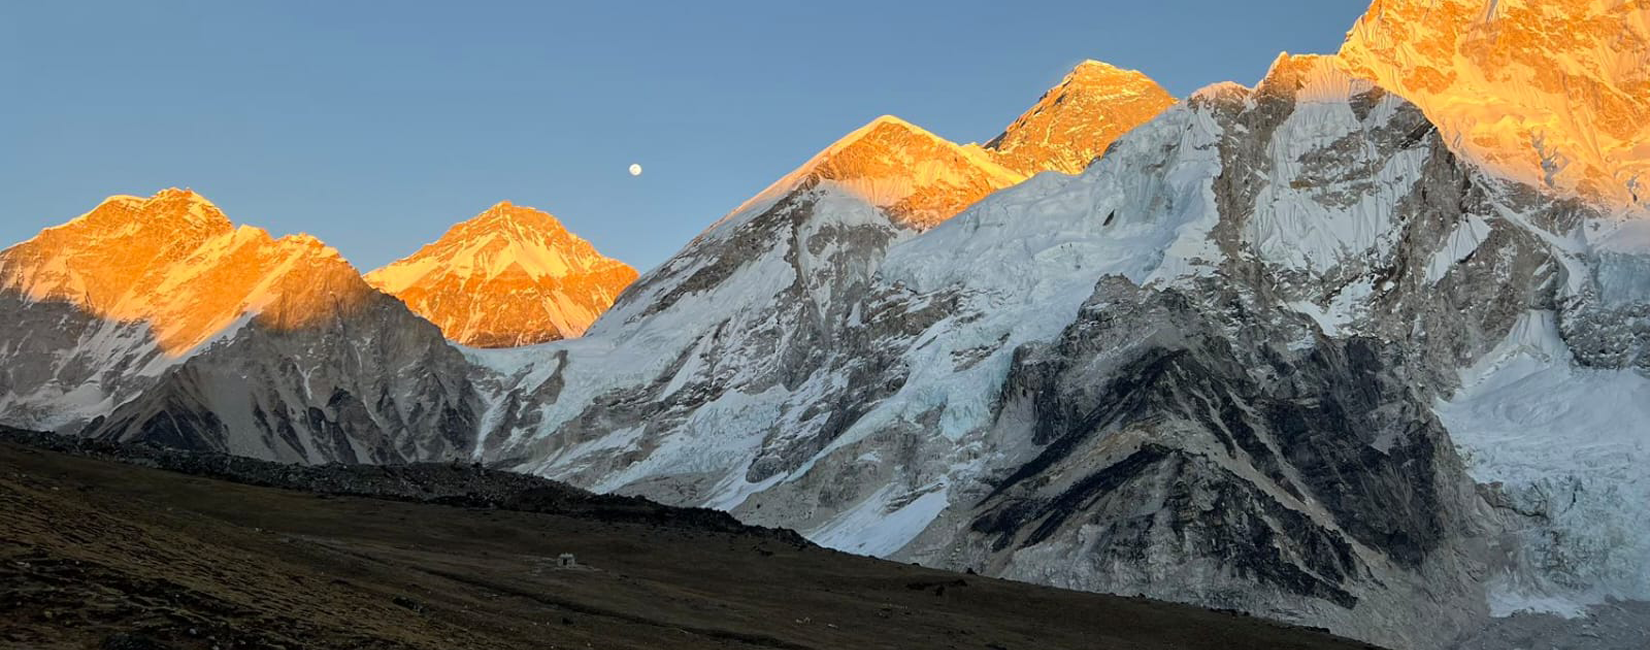 Everest Base camp Trek Via Renjola